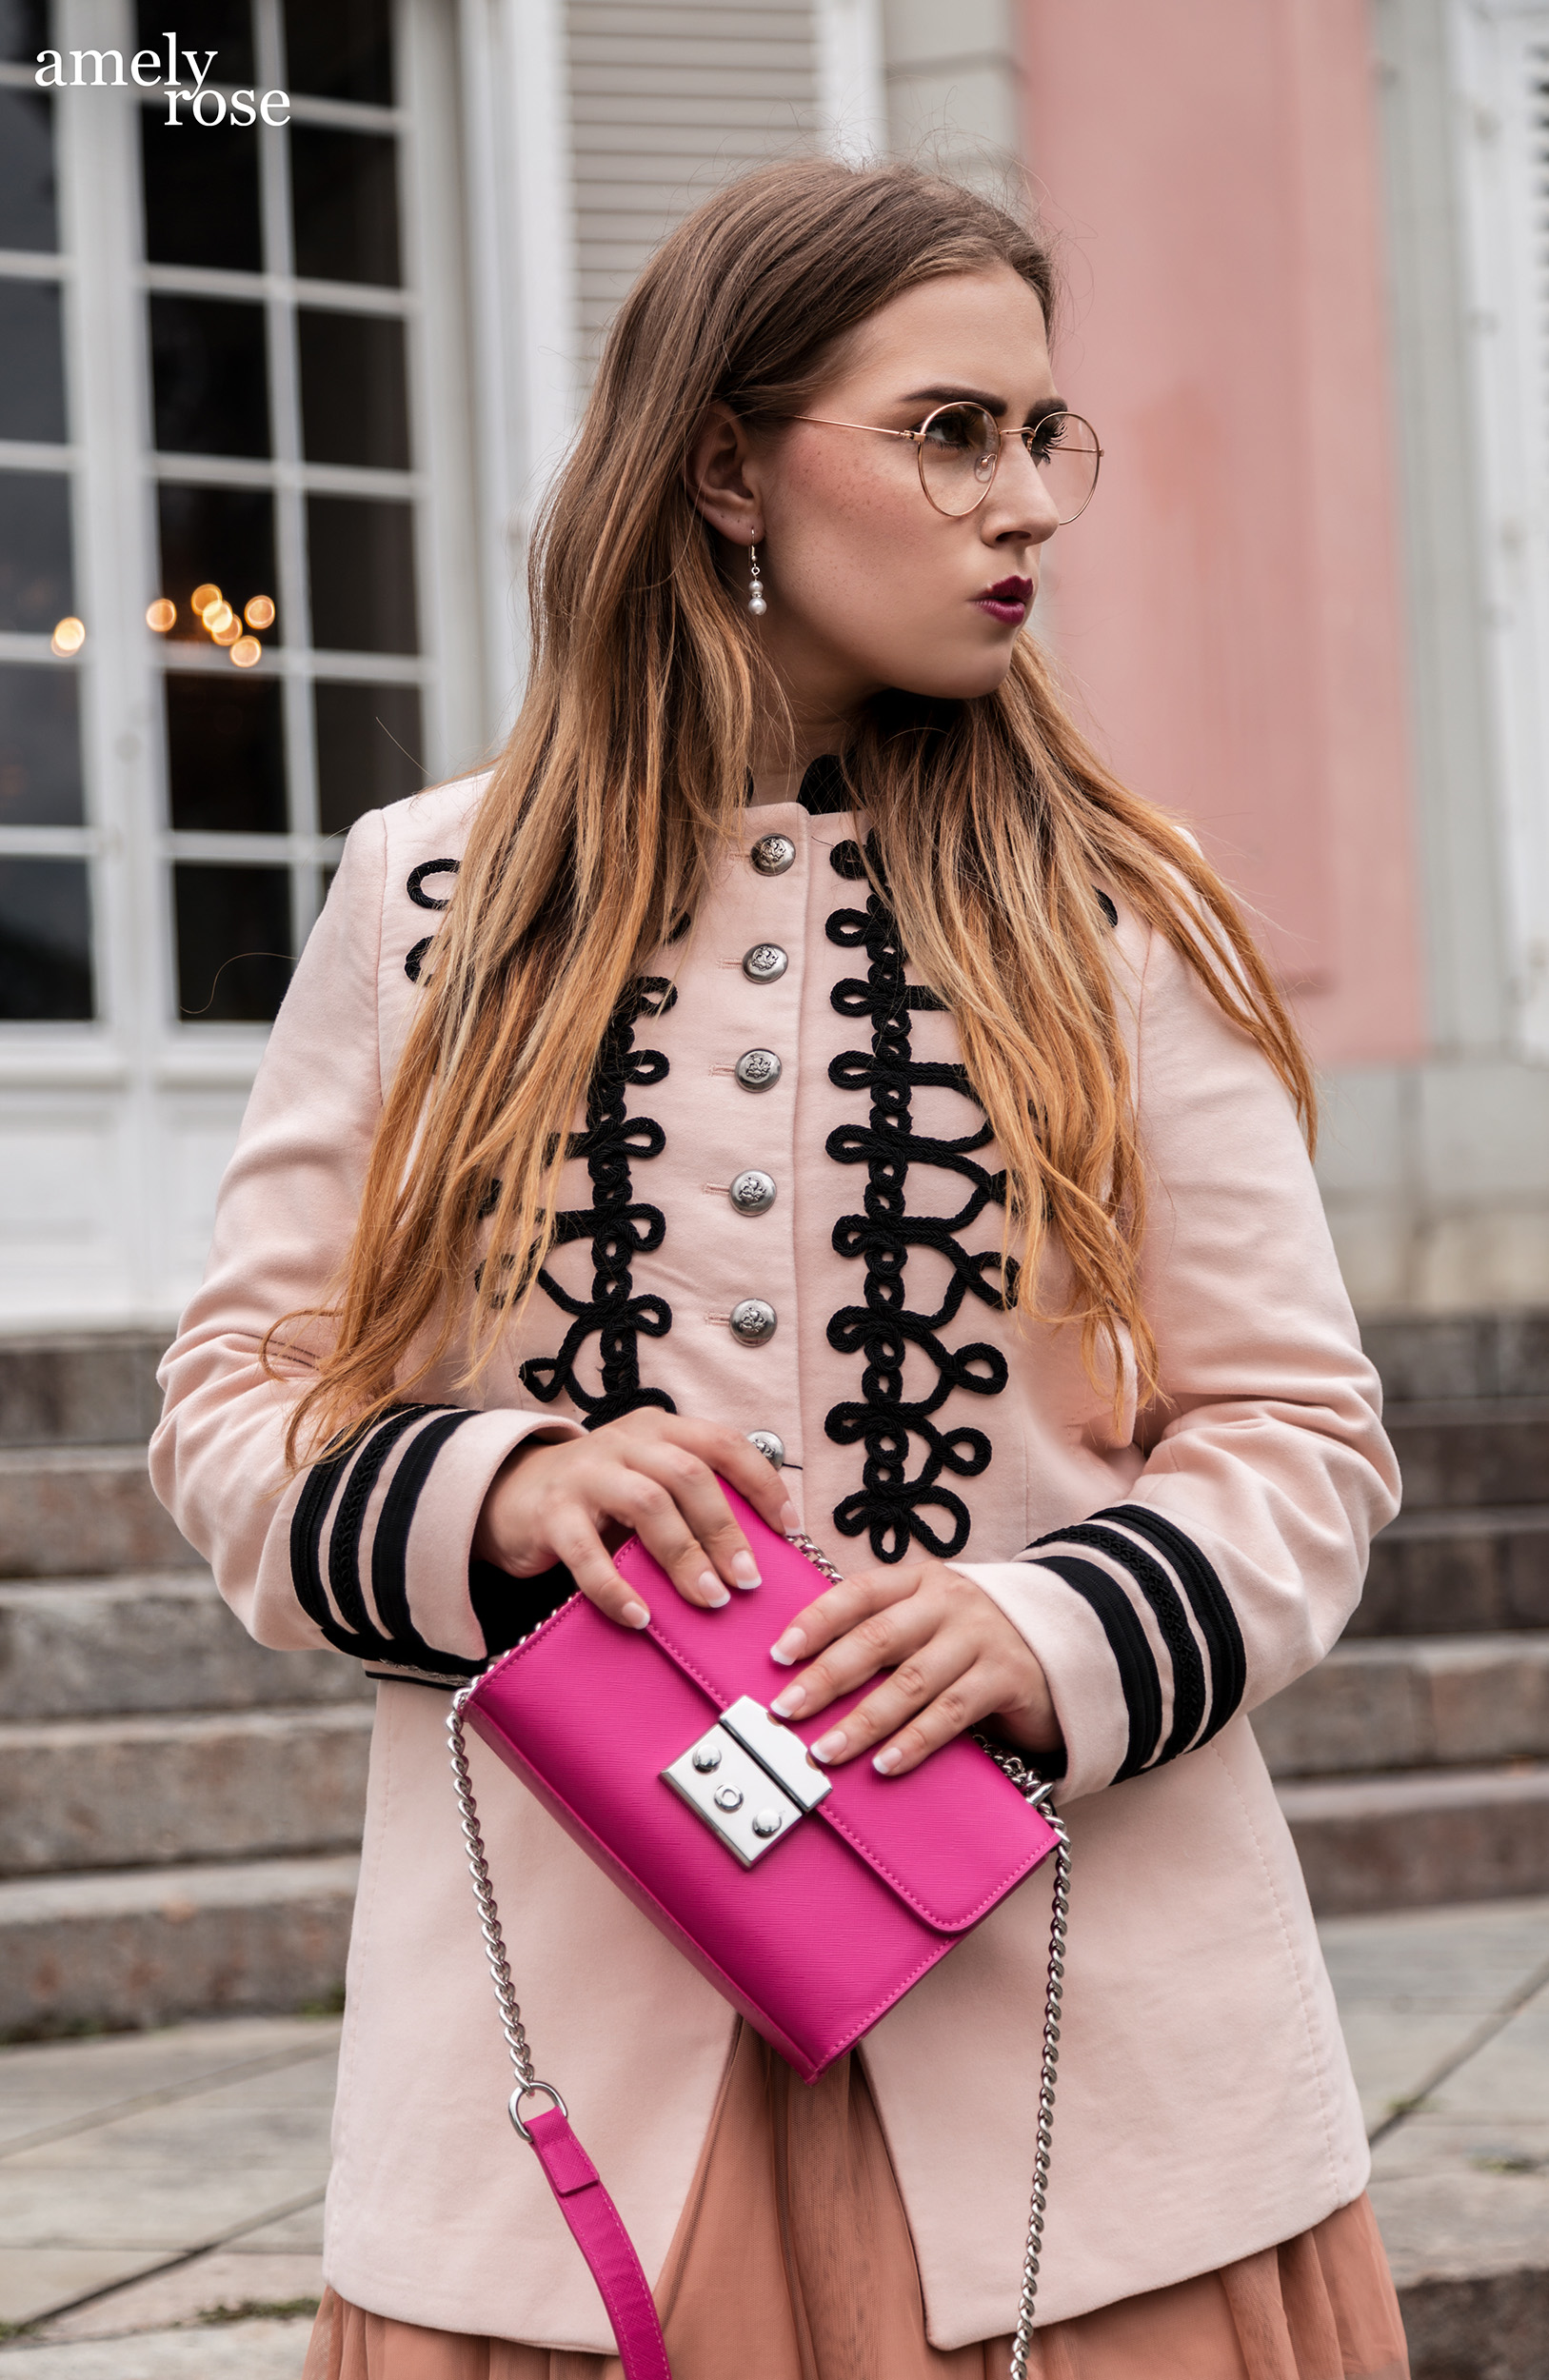 Amely Rose ist eine der erfolgreisten deutschen fashionblogger und german influencer, heute erzählt sie 25 fakten und zeigt ein schönes ootd und oktoberfestlook vor dem pinken schloss in benrath düsseldorf.